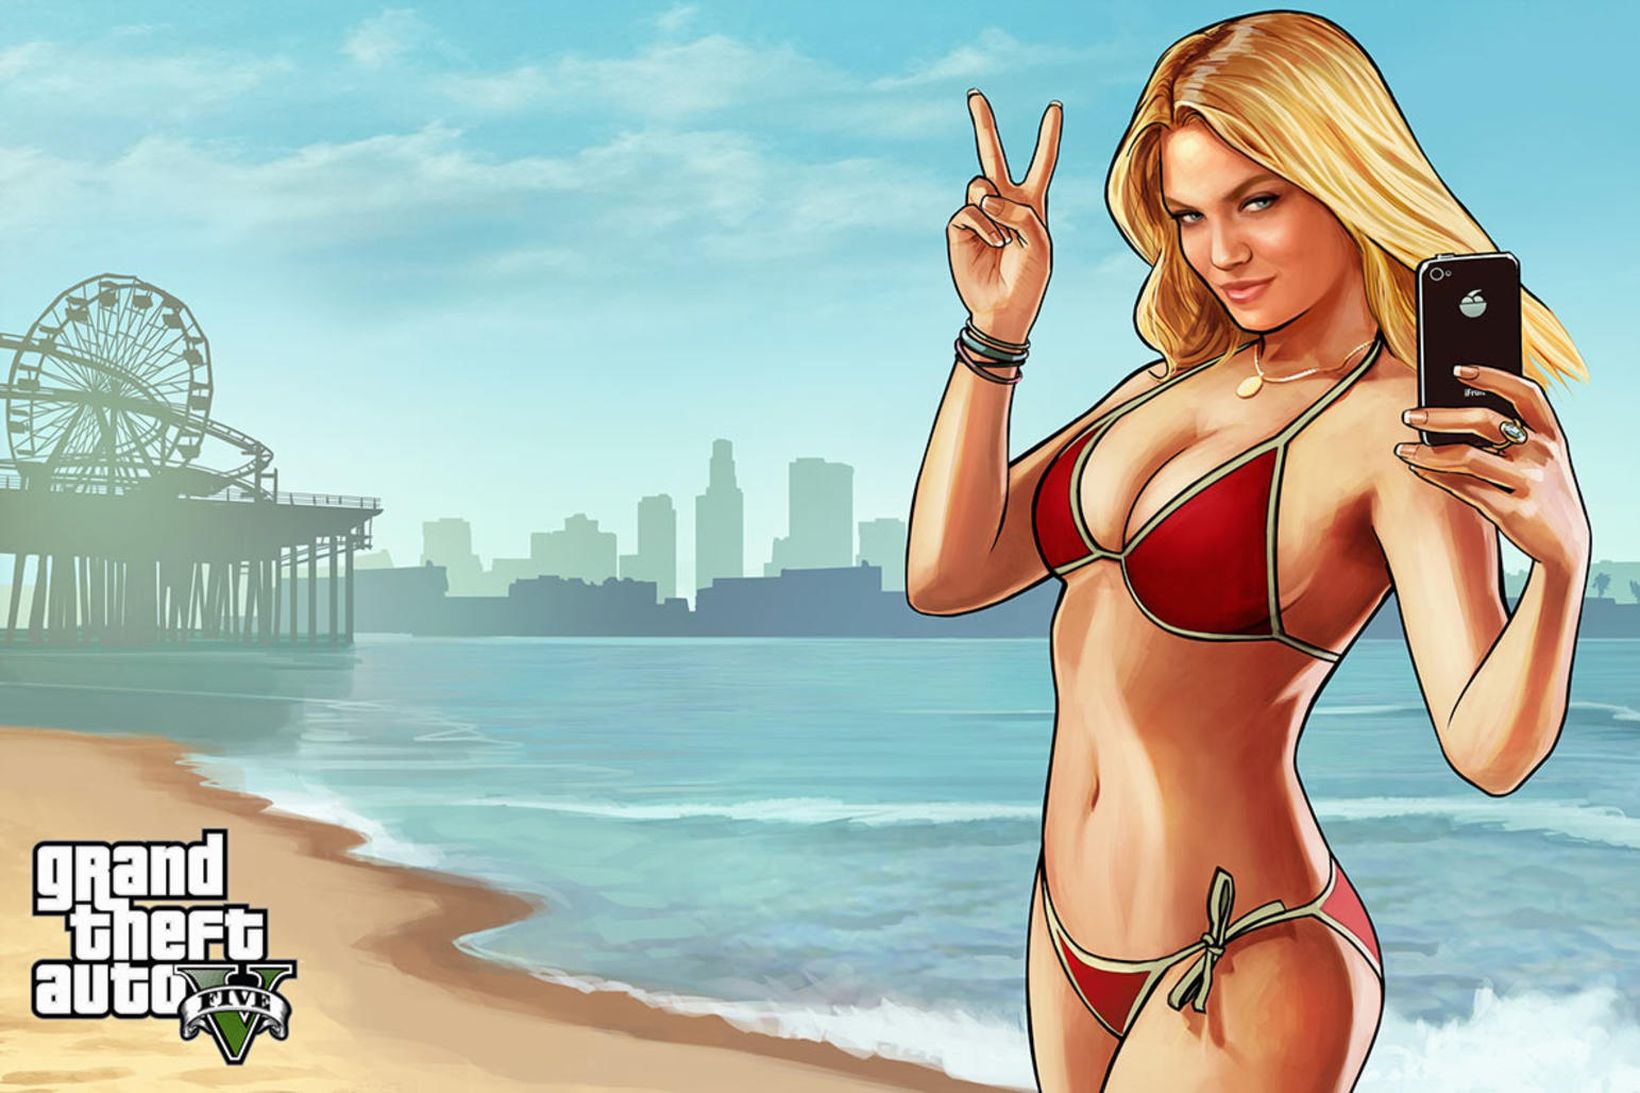 Tölvuleikurinn Grand Theft Auto: V er einn af mest seldu …